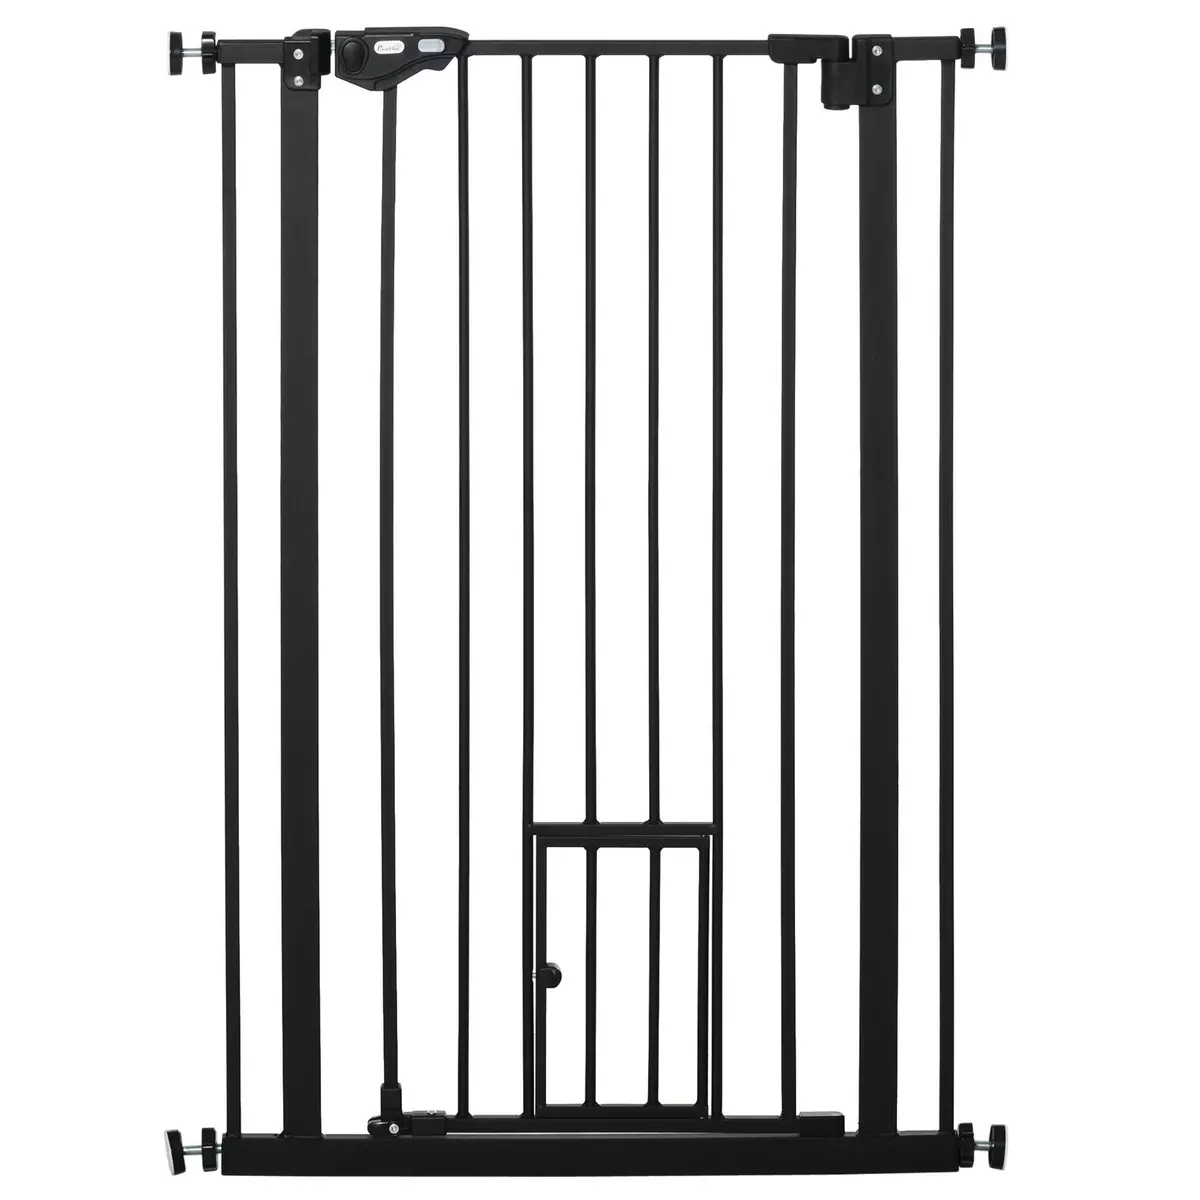 PAWHUT Barrière de sécurité animaux - longueur réglable dim. 74-80 cm - porte double verrouillage, ouverture double sens, petite porte -sans perçage - acier plastique noir